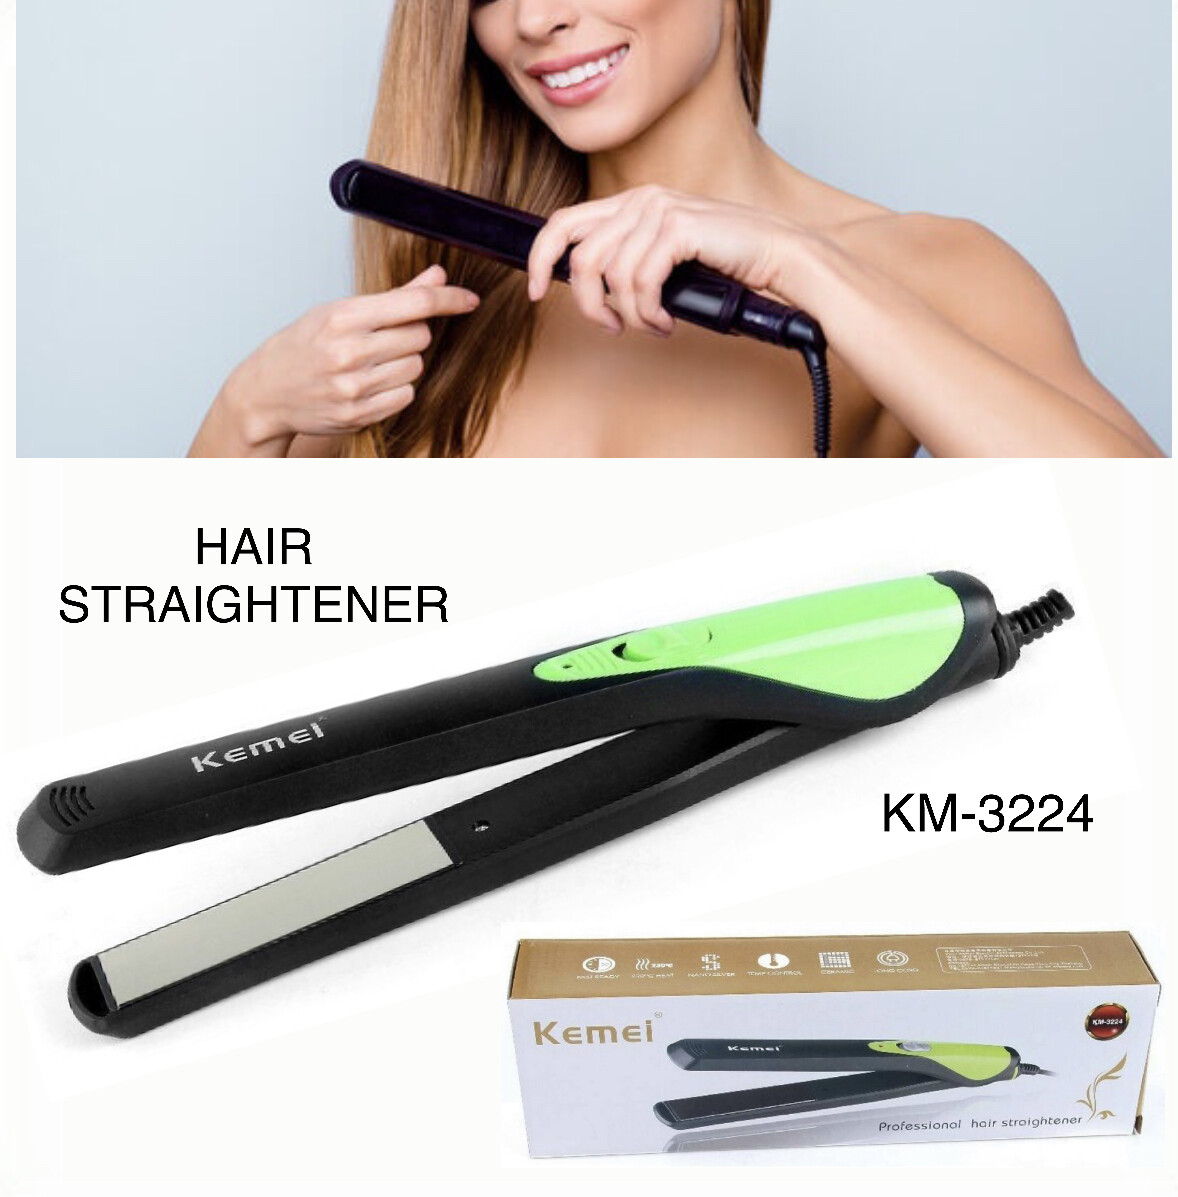 Hair Straightener KM-3224